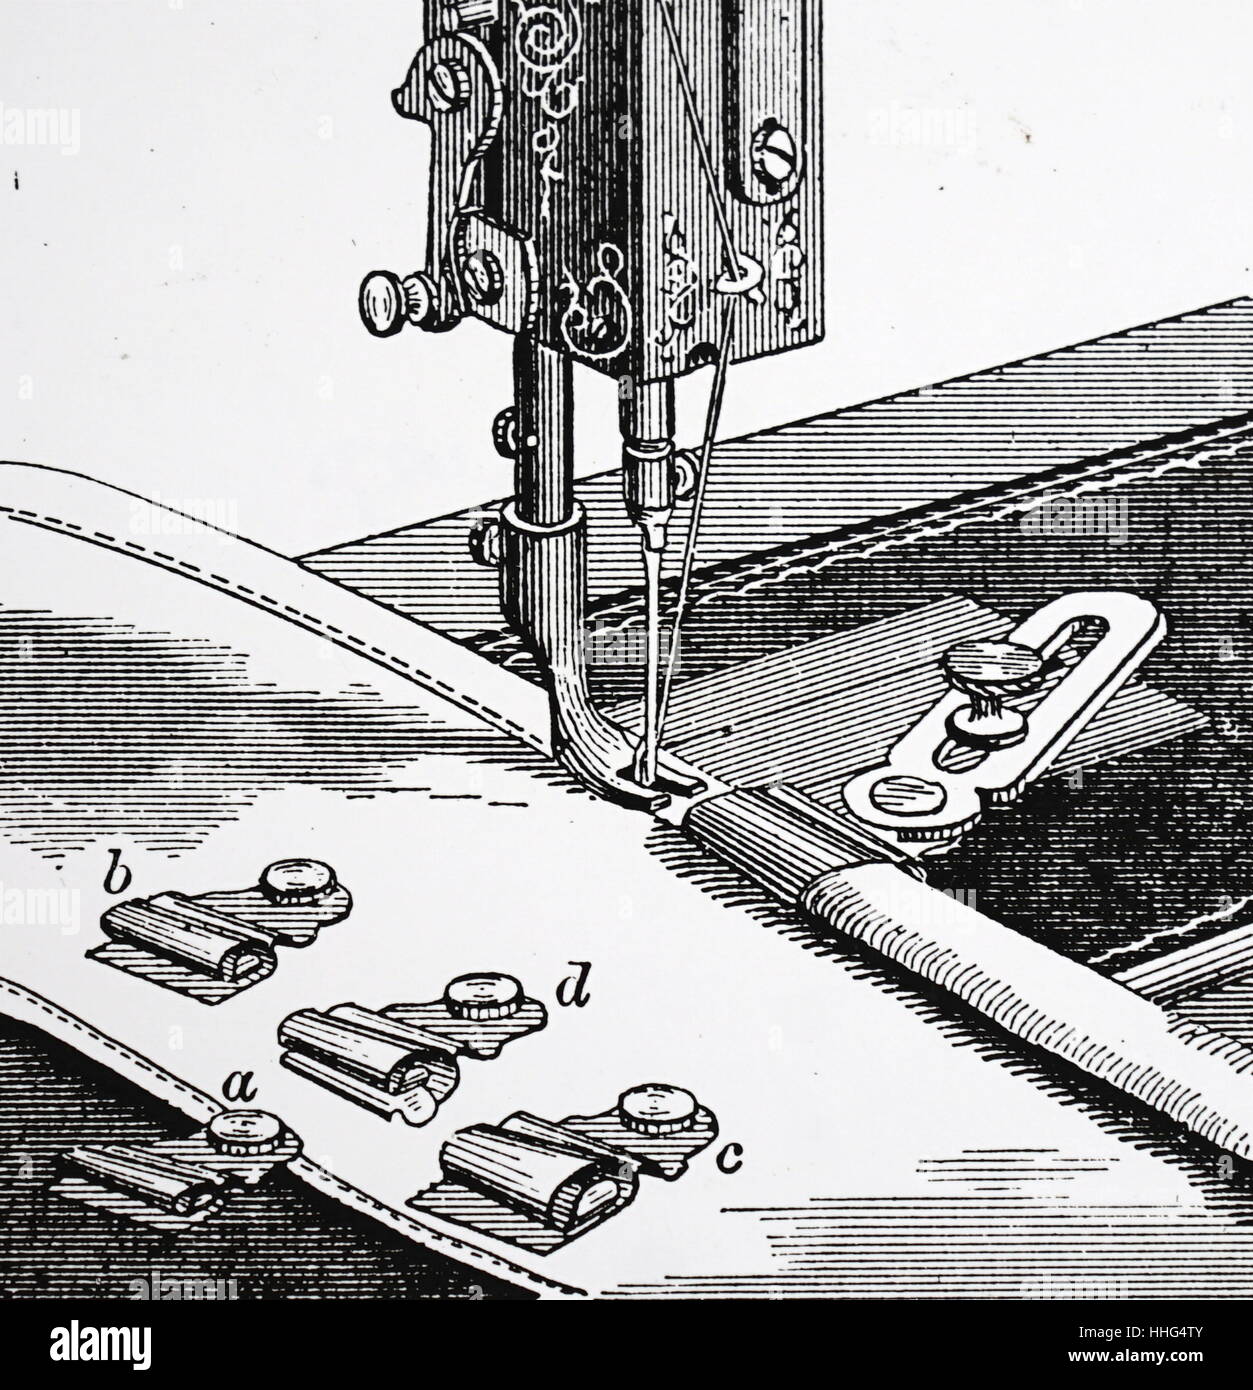 W.G Wilson's Nähmaschine Anhänge: Die plaiter oder Tucker. Der Leitfaden  wurde auf die breite Anforderung eingestellt, und die Gefalteten Stoff  durch geführt. London, datiert 1880 Stockfotografie - Alamy